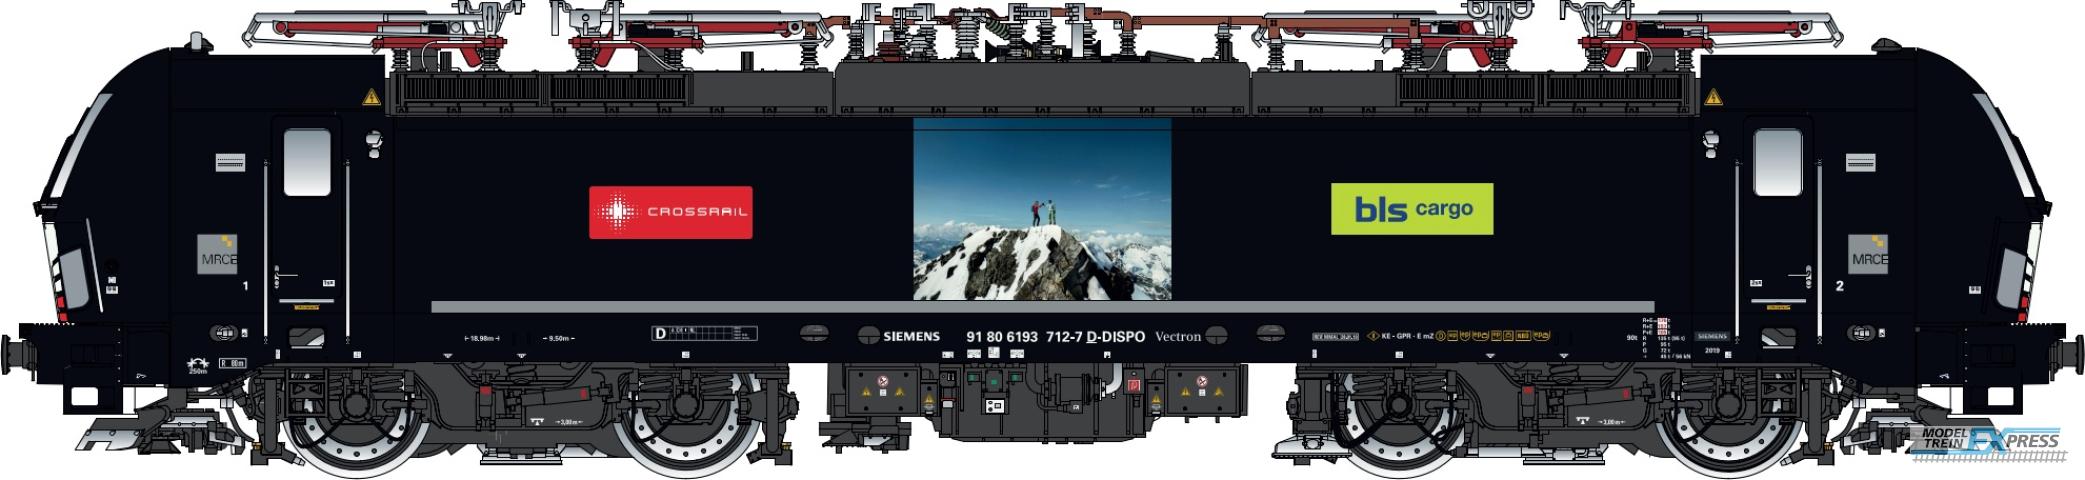 LS Models 17617S BLS Cargo/Crossrail/MRCE Vectron MS, 91 80 6193 712-7 D-DISPO, 4 pantographs  /  Ep. VI  /  ---  /  HO  /  AC SOUND  /  1 P.